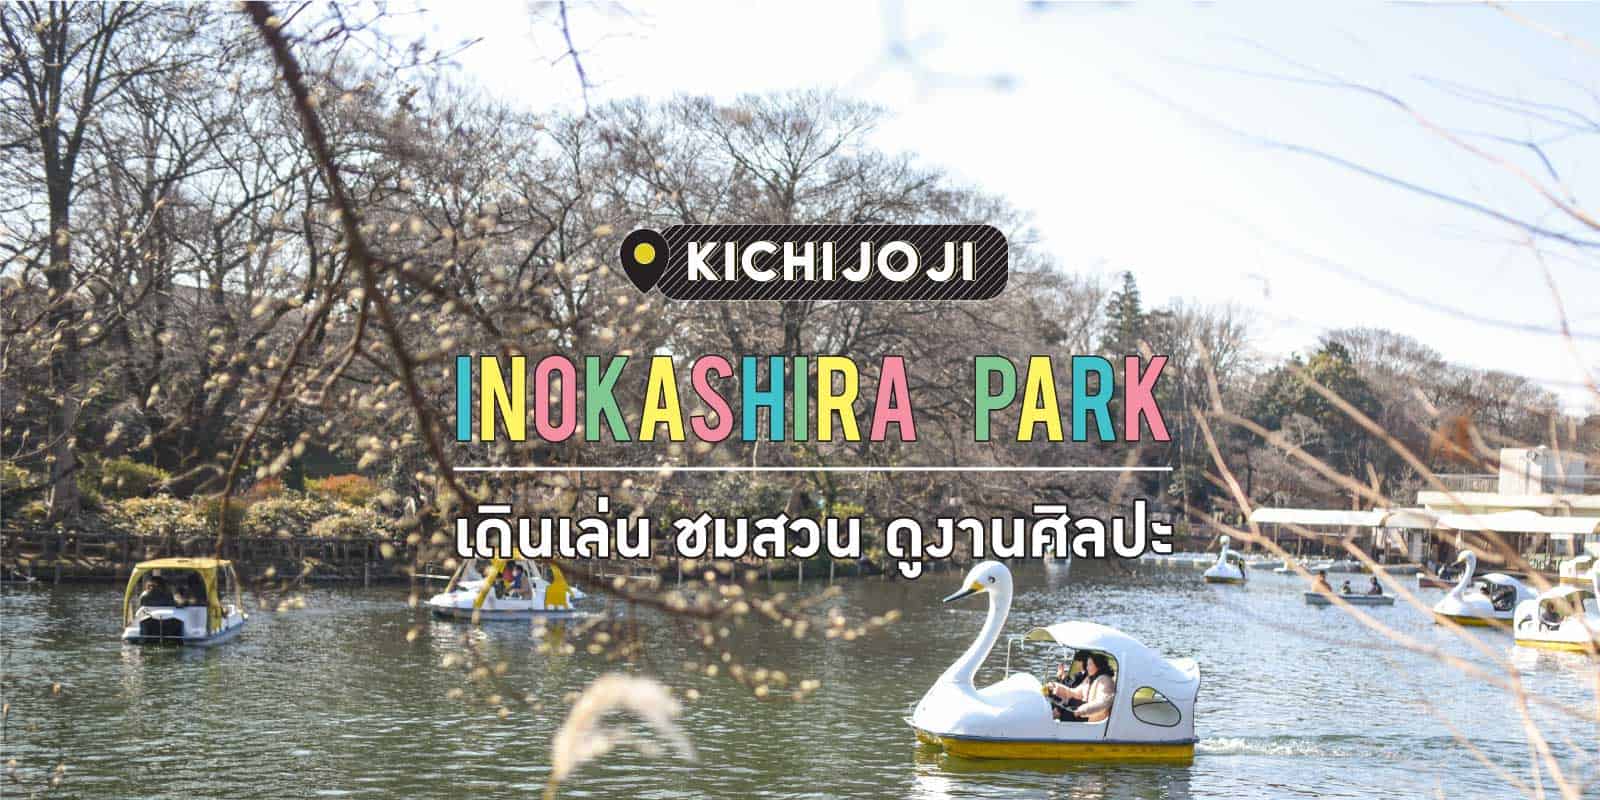 Inokashira Park in Kichijoji